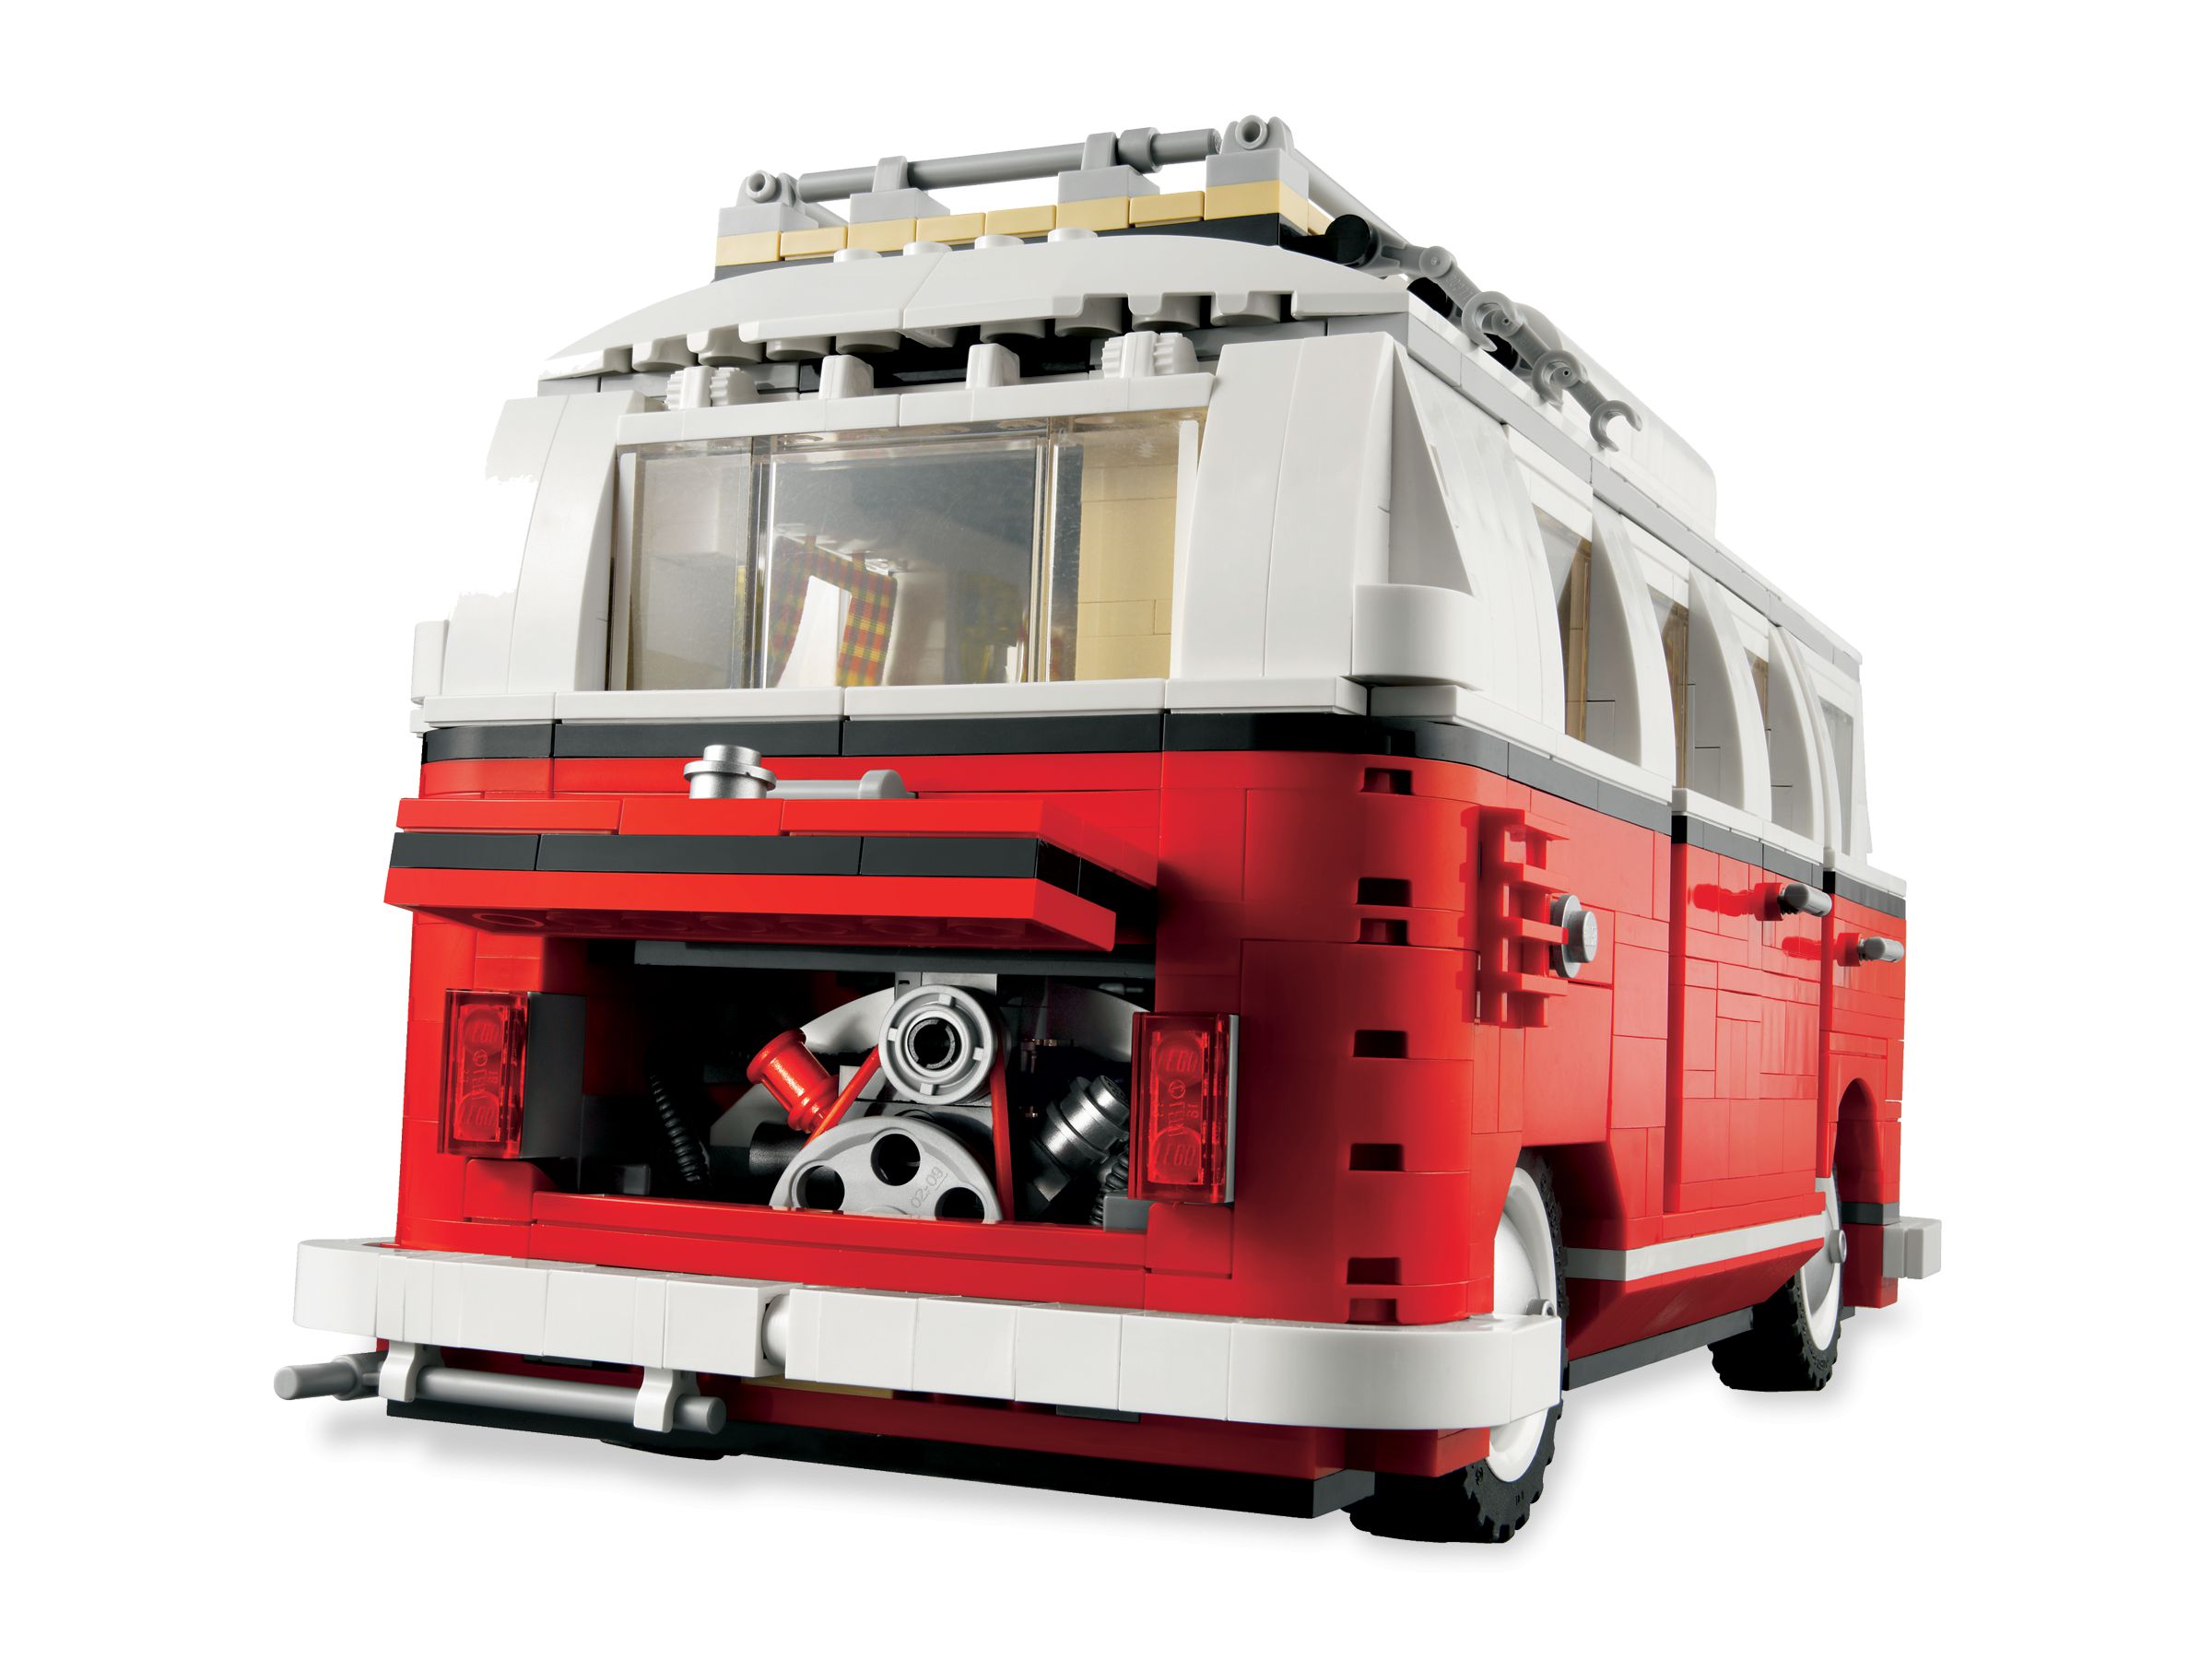 LEGO Advanced Models 10220 Volkswagen T1 Campingbus LEGO_10220_alt3.jpg